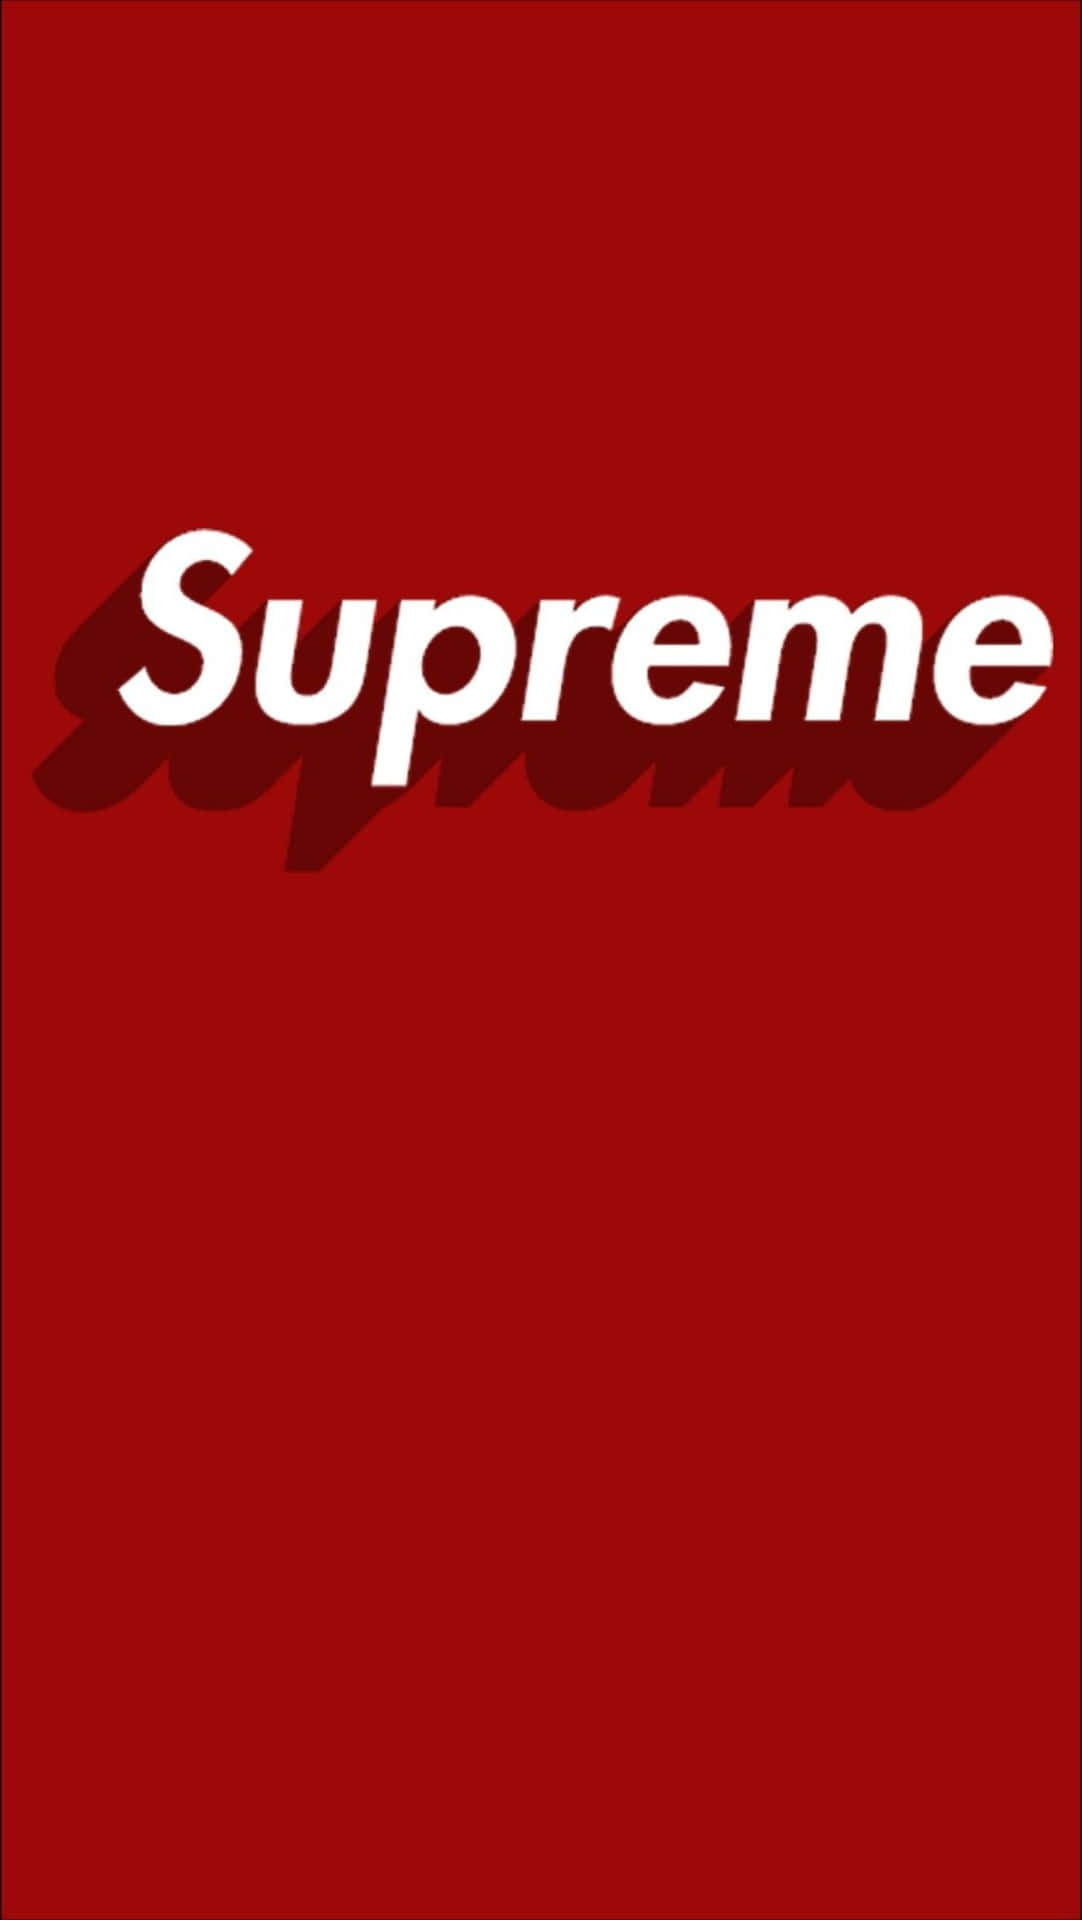 Supreme Logo 1107 X 1965 Wallpaper